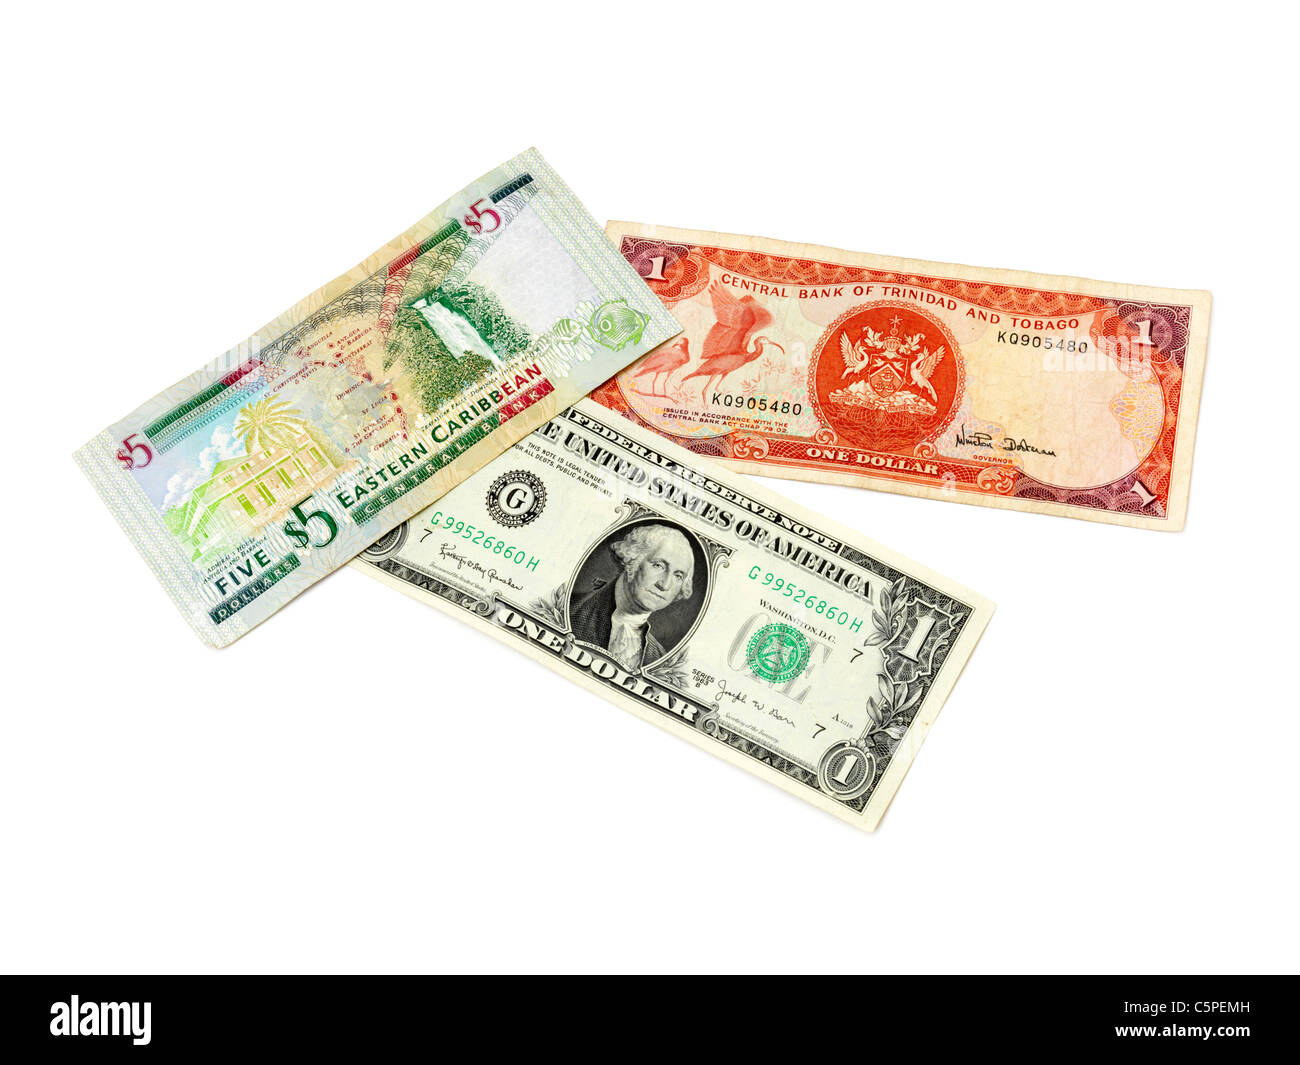 Eine Östliche Karibik 5 $-Note, eine Zentralbank von Trinidad und Tobago $1 Hinweis und eine Vereinigte Staaten von Amerika, 1 Dollar-note Stockfoto